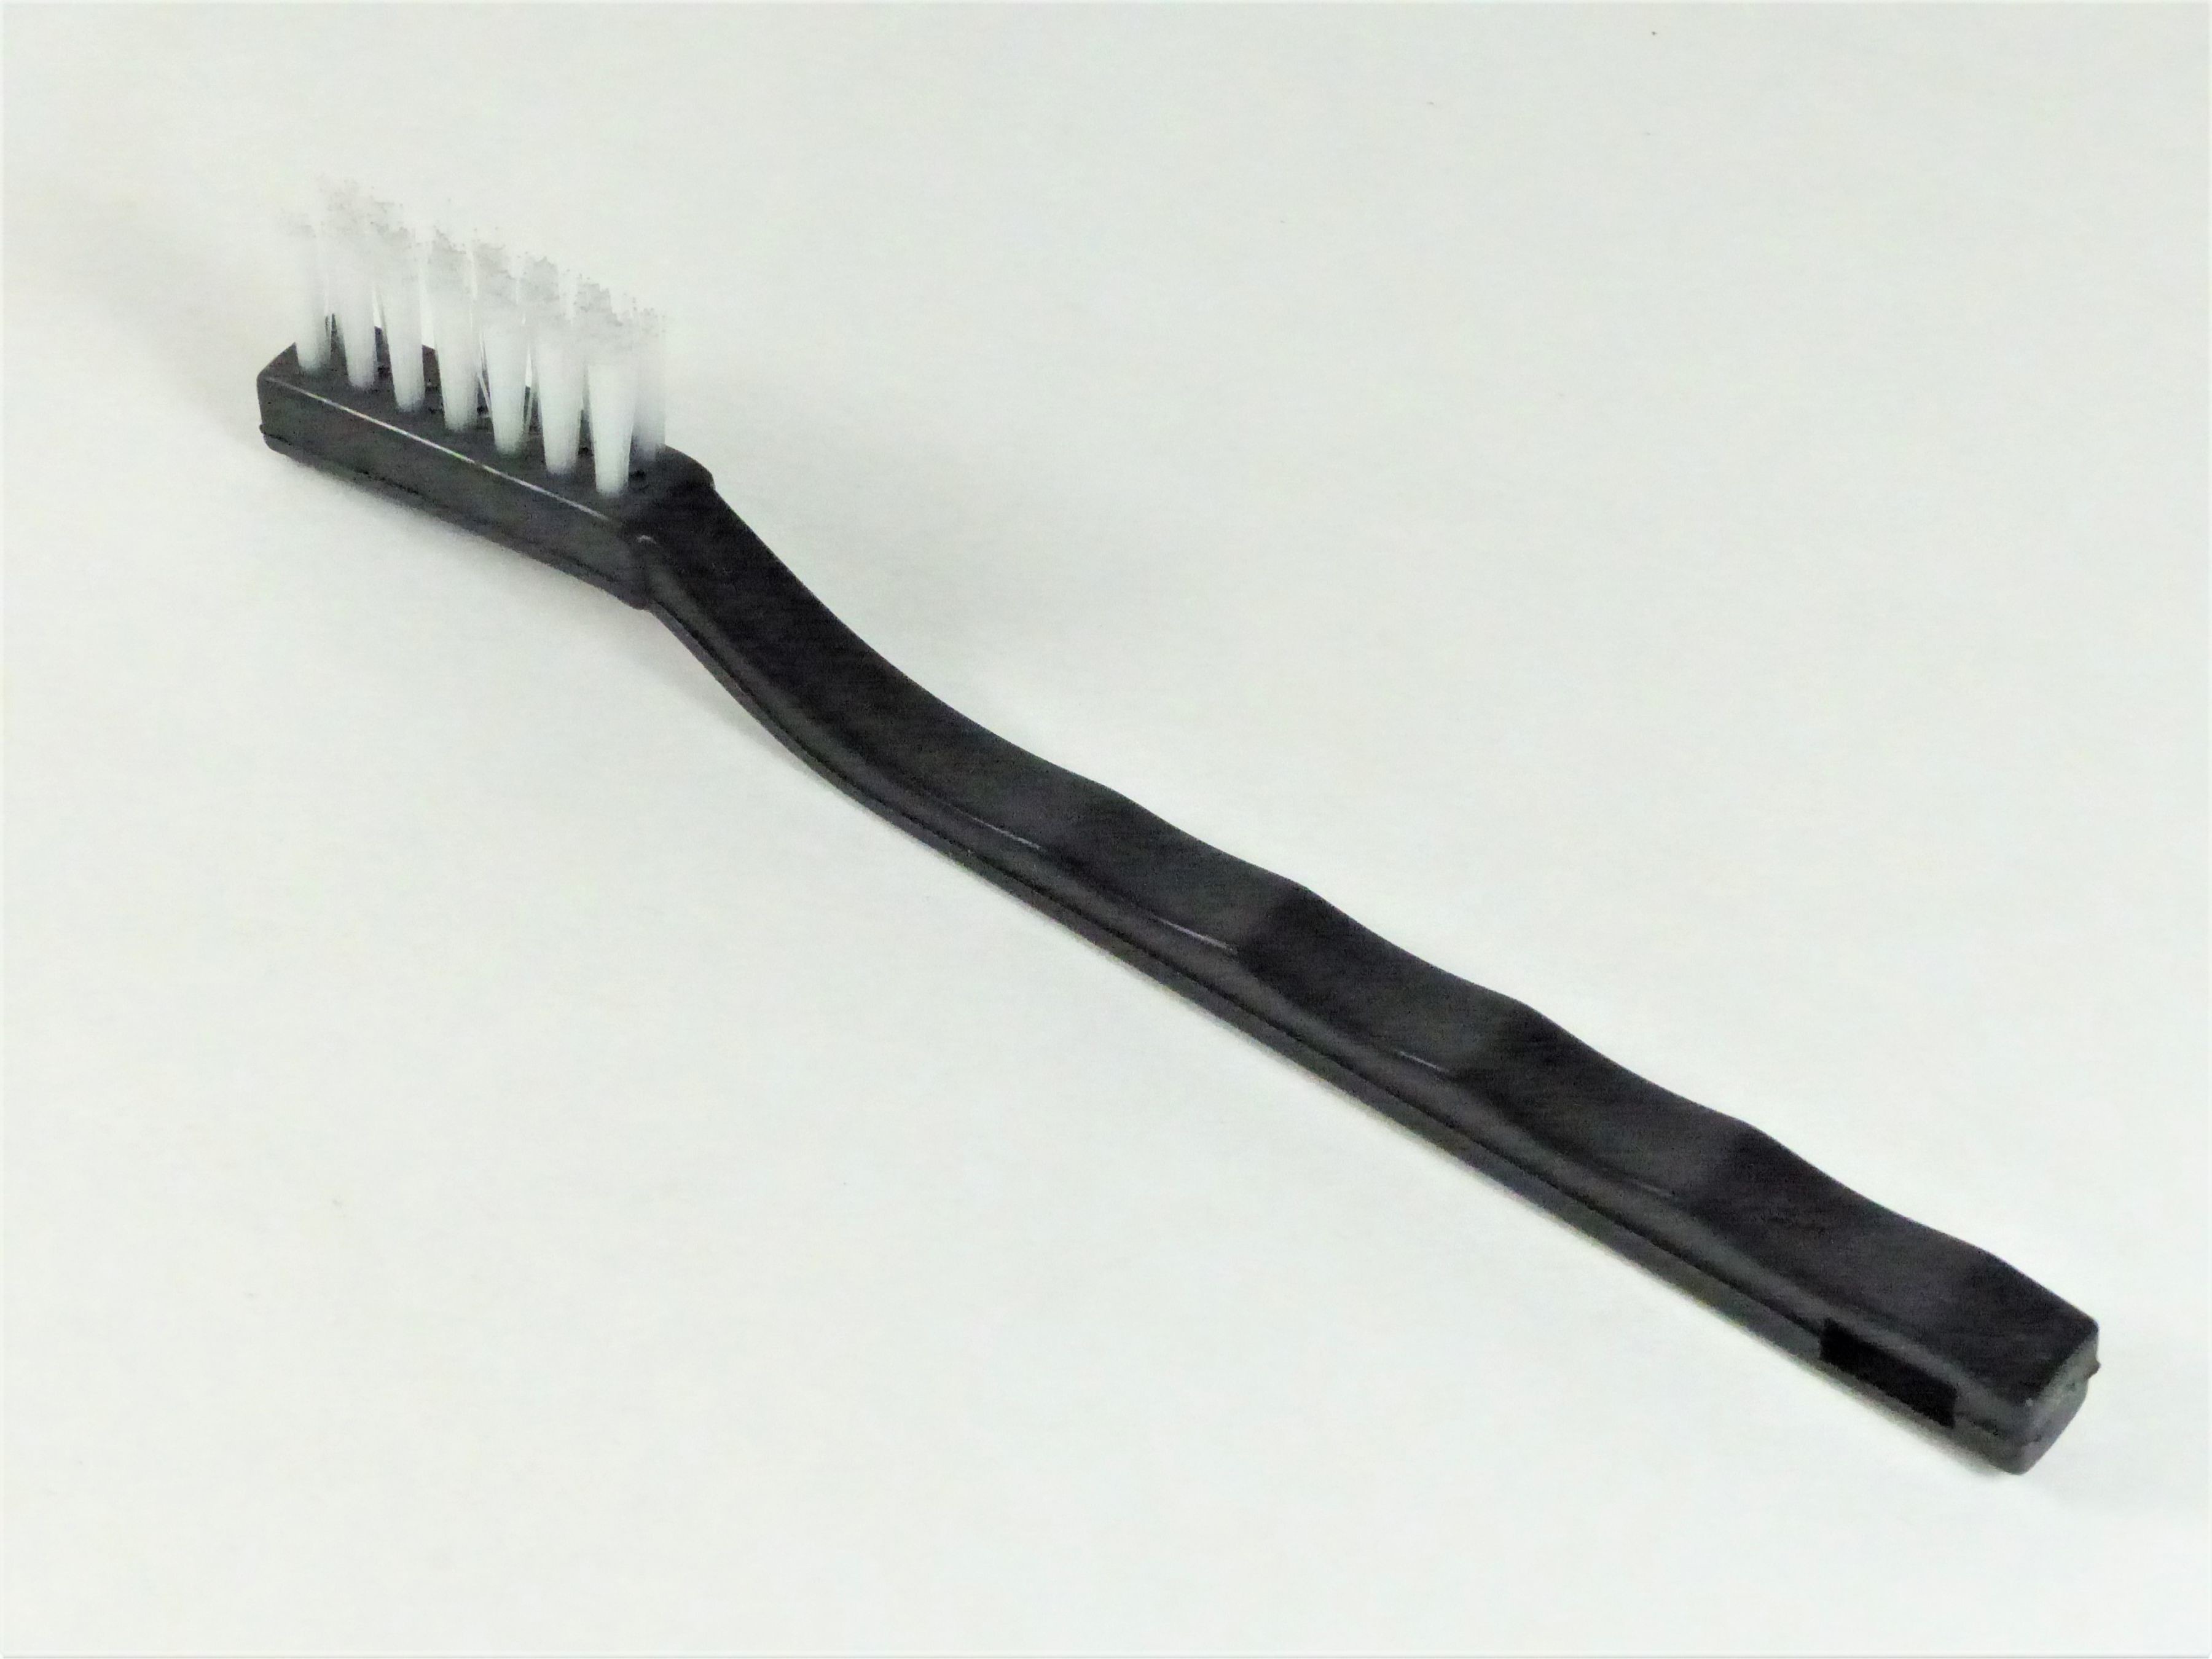 Monster Shine Detail Long Handled Plastic - szczotka z długą rękojęścią i sztywnym włosiem AKC000334